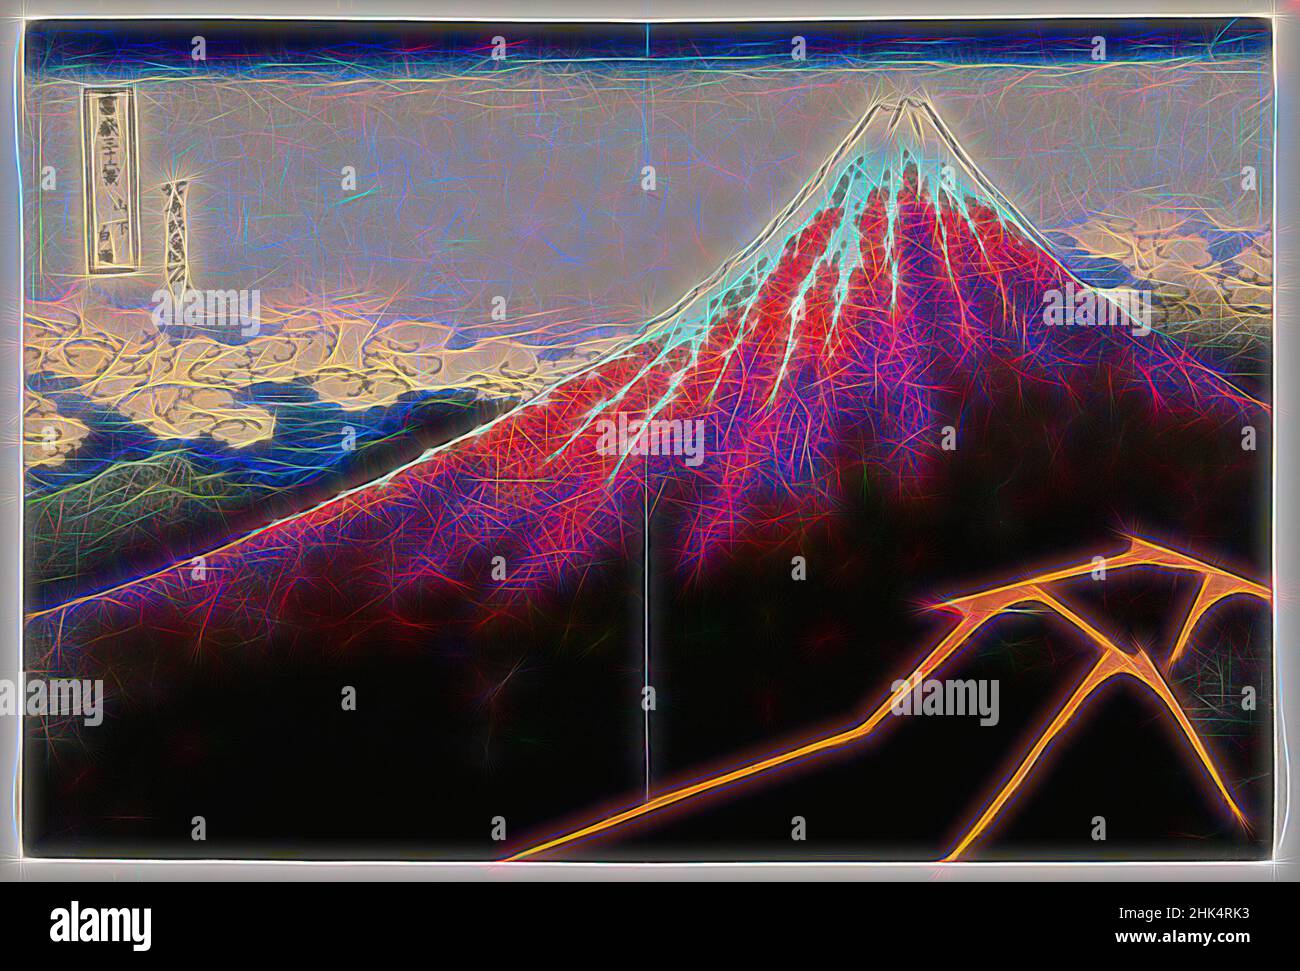 Inspiriert von Regensturm unter dem Gipfel, aus der Serie 36 Ansichten des Fuji-Berges, aus der Serie: '36 Ansichten des Fuji', Katsushika Hokusai, japanisch, 1760-1849, Farbholzschnitt auf Papier, Japan, ca. 1832, Edo-Periode, 9 7/8 x 14 5/8 Zoll, 25,1 x 37,1 cm, Japan, Fuji-Berg, Berg, neu erfunden von Artotop. Klassische Kunst neu erfunden mit einem modernen Twist. Design von warmen fröhlichen Leuchten der Helligkeit und Lichtstrahl Strahlkraft. Fotografie inspiriert von Surrealismus und Futurismus, umarmt dynamische Energie der modernen Technologie, Bewegung, Geschwindigkeit und Kultur zu revolutionieren Stockfoto